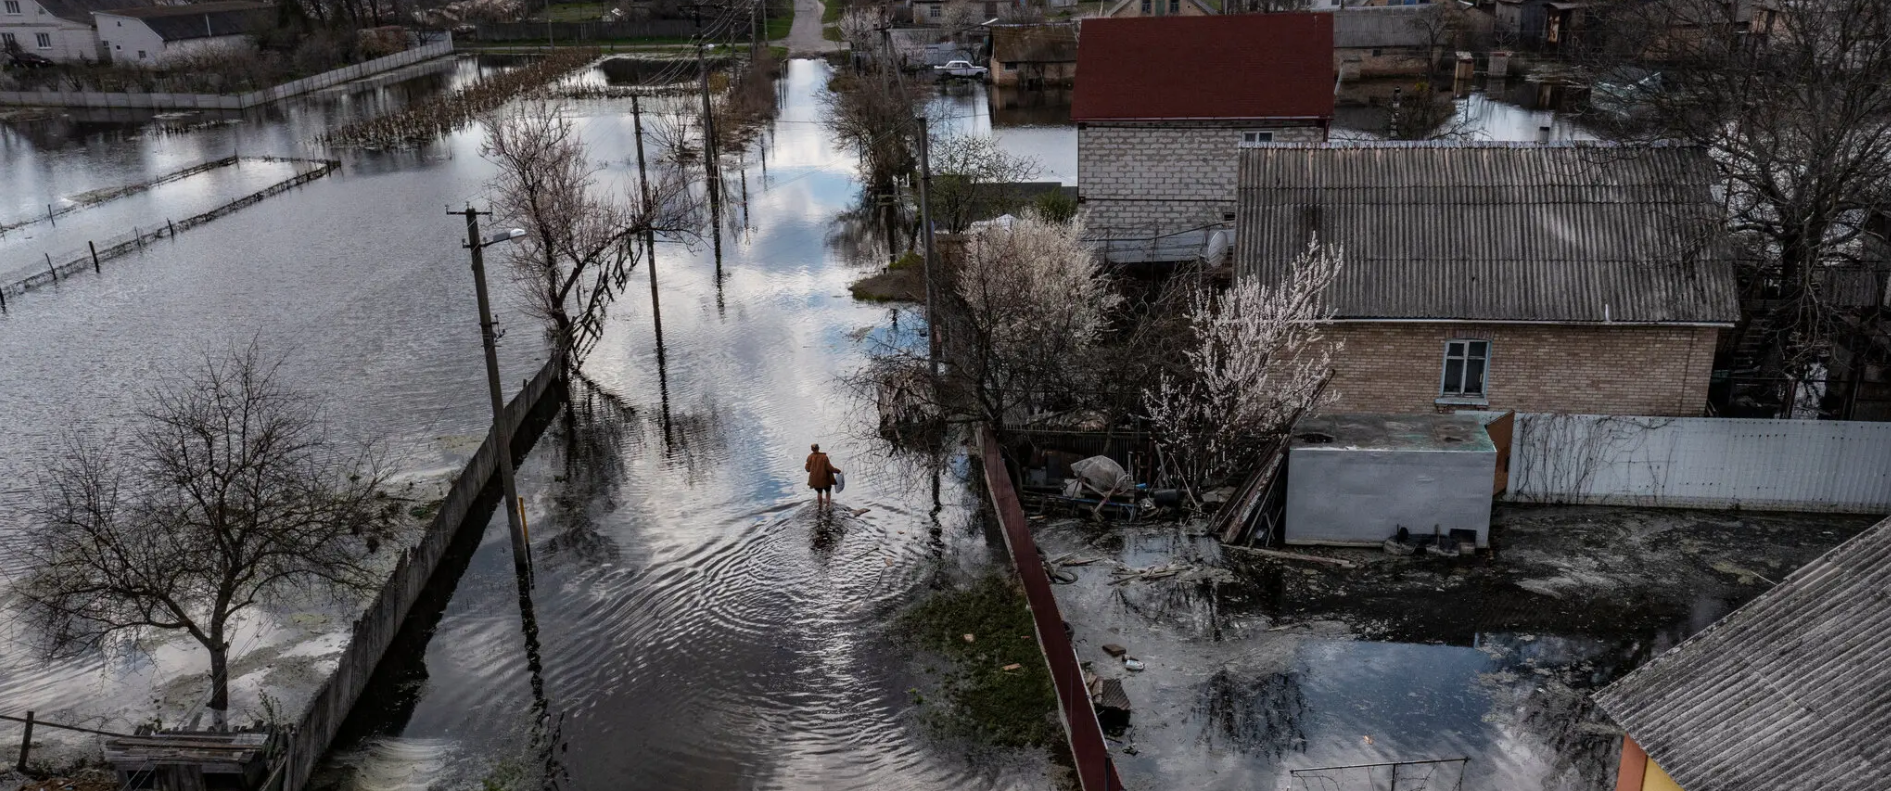 Мешканці Демідова затопили своє власне село, щоб врятувати Київ - New York Times